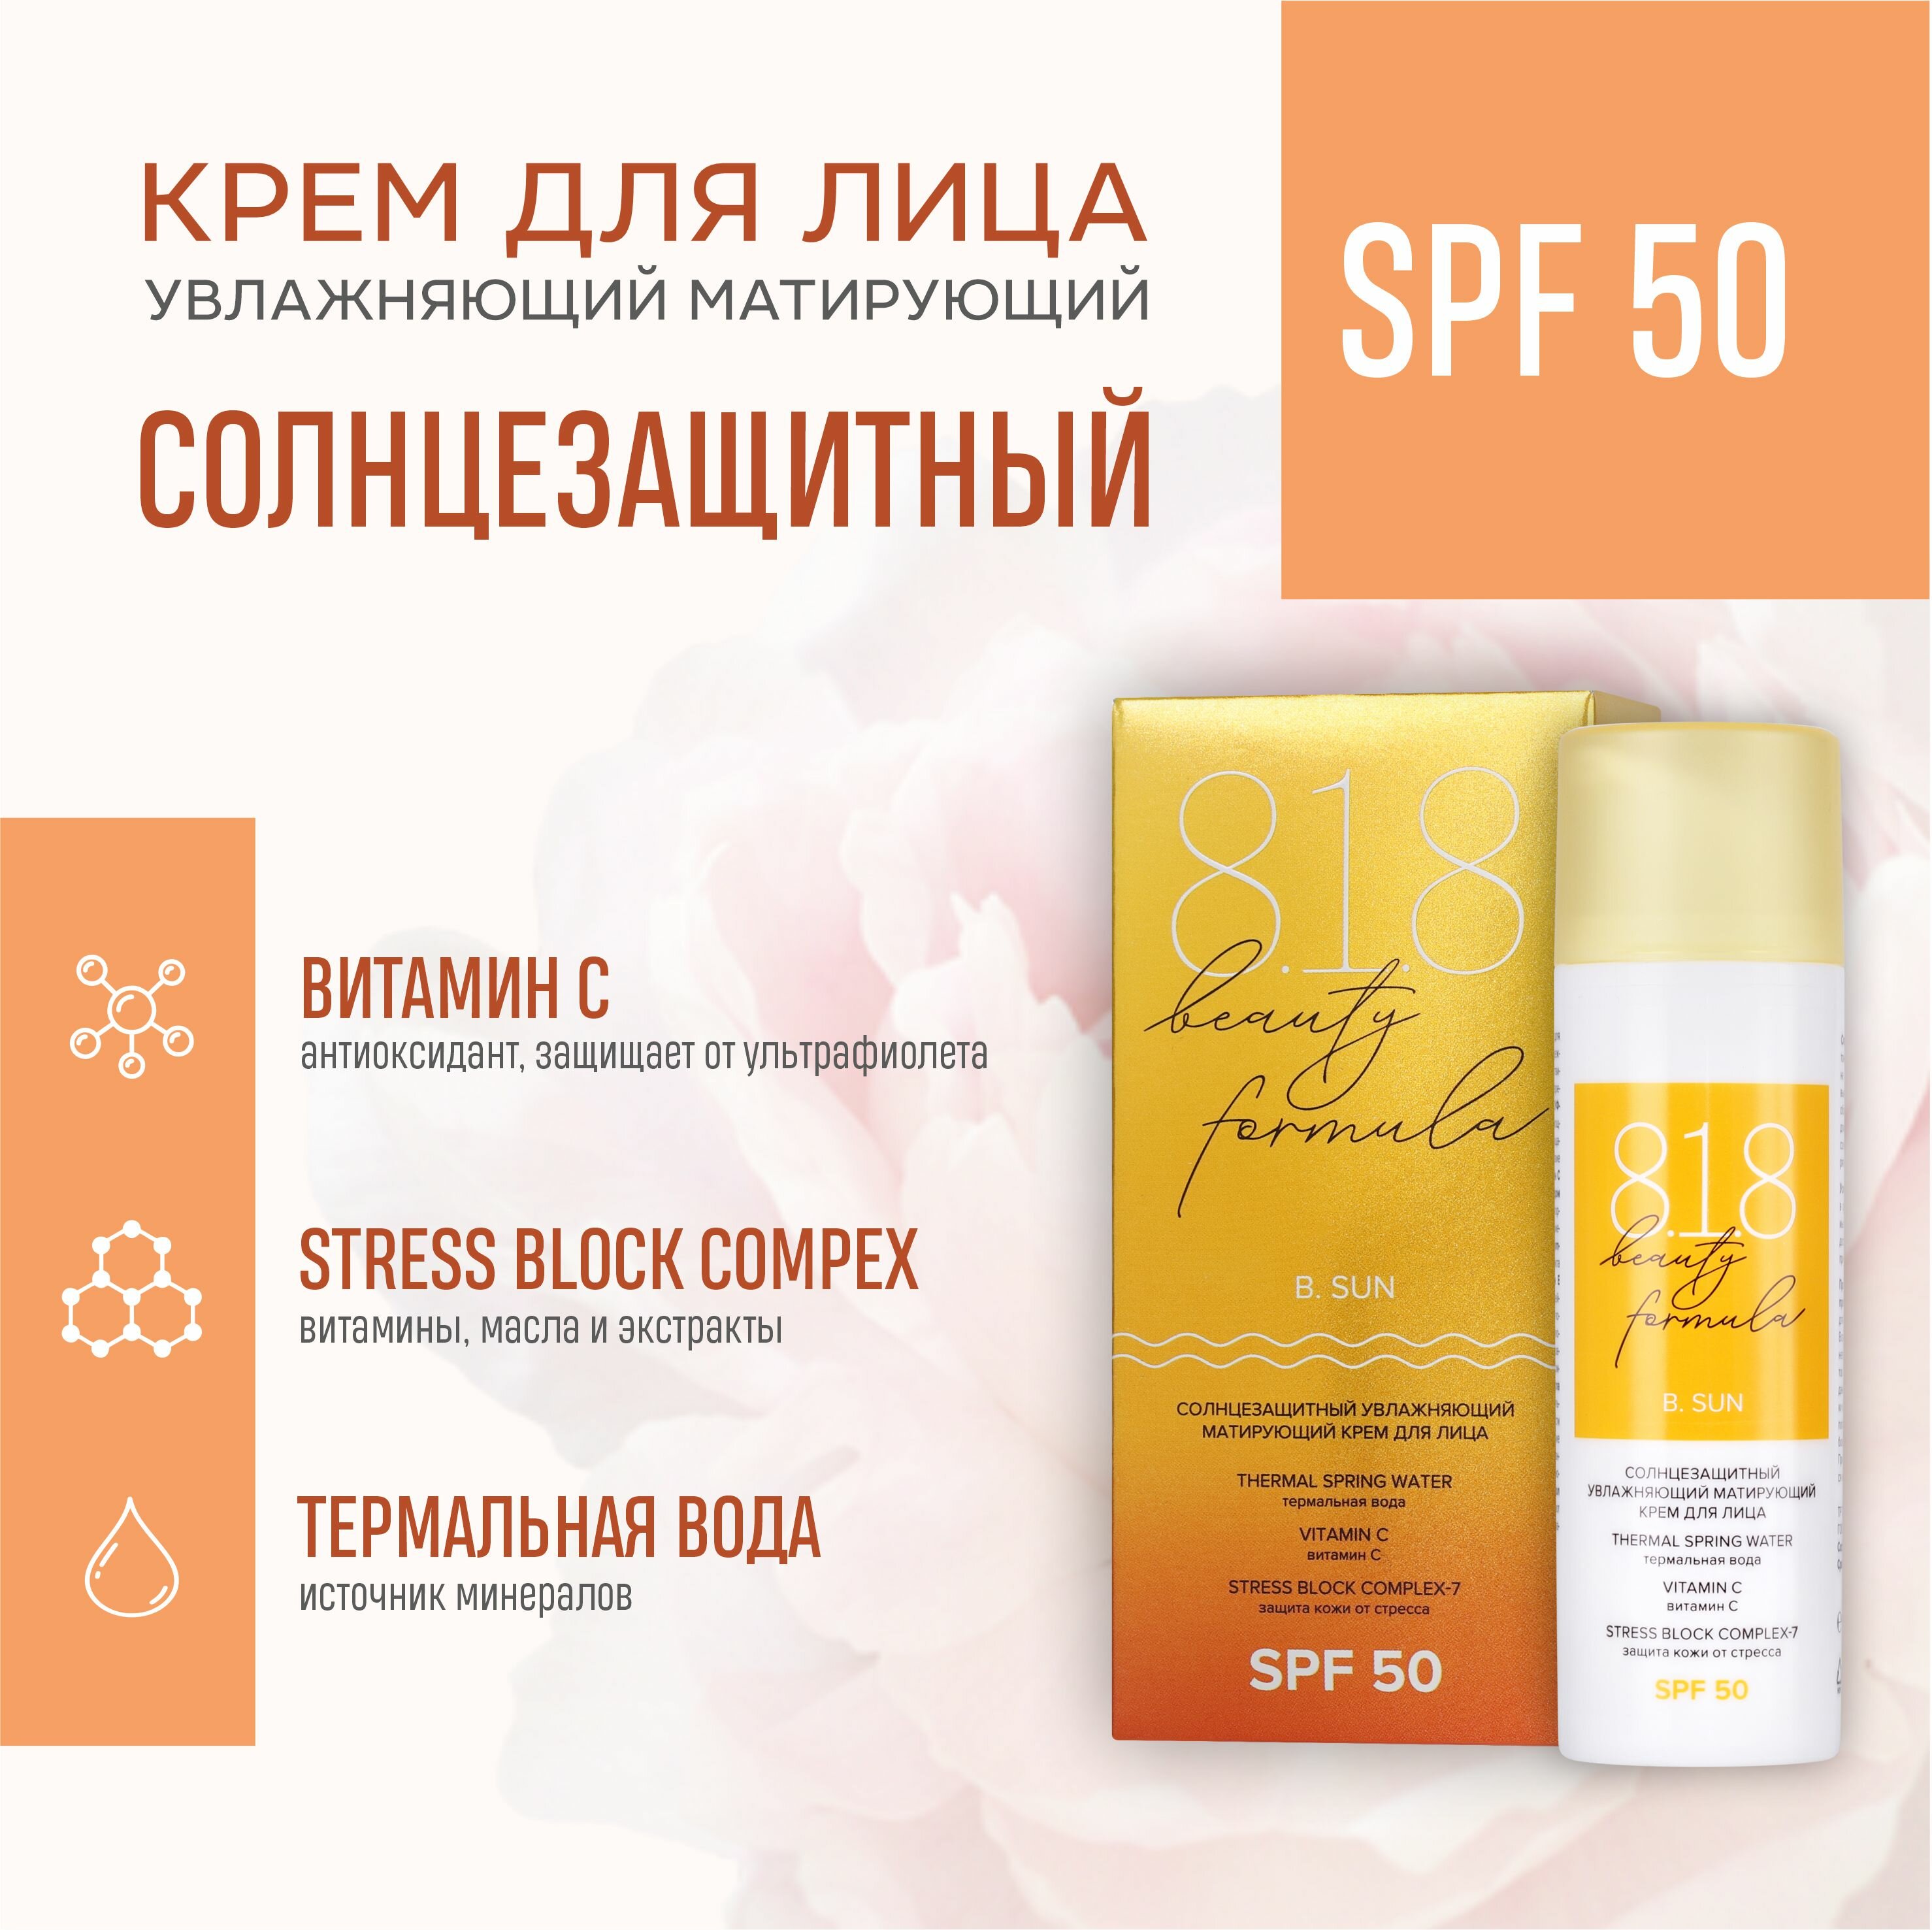 Солнцезащитный матирующий крем для лица 818 beauty formula SPF 50 50 мл a pieu крем для лица pure block солнцезащитный spf 50 водостойкий 50